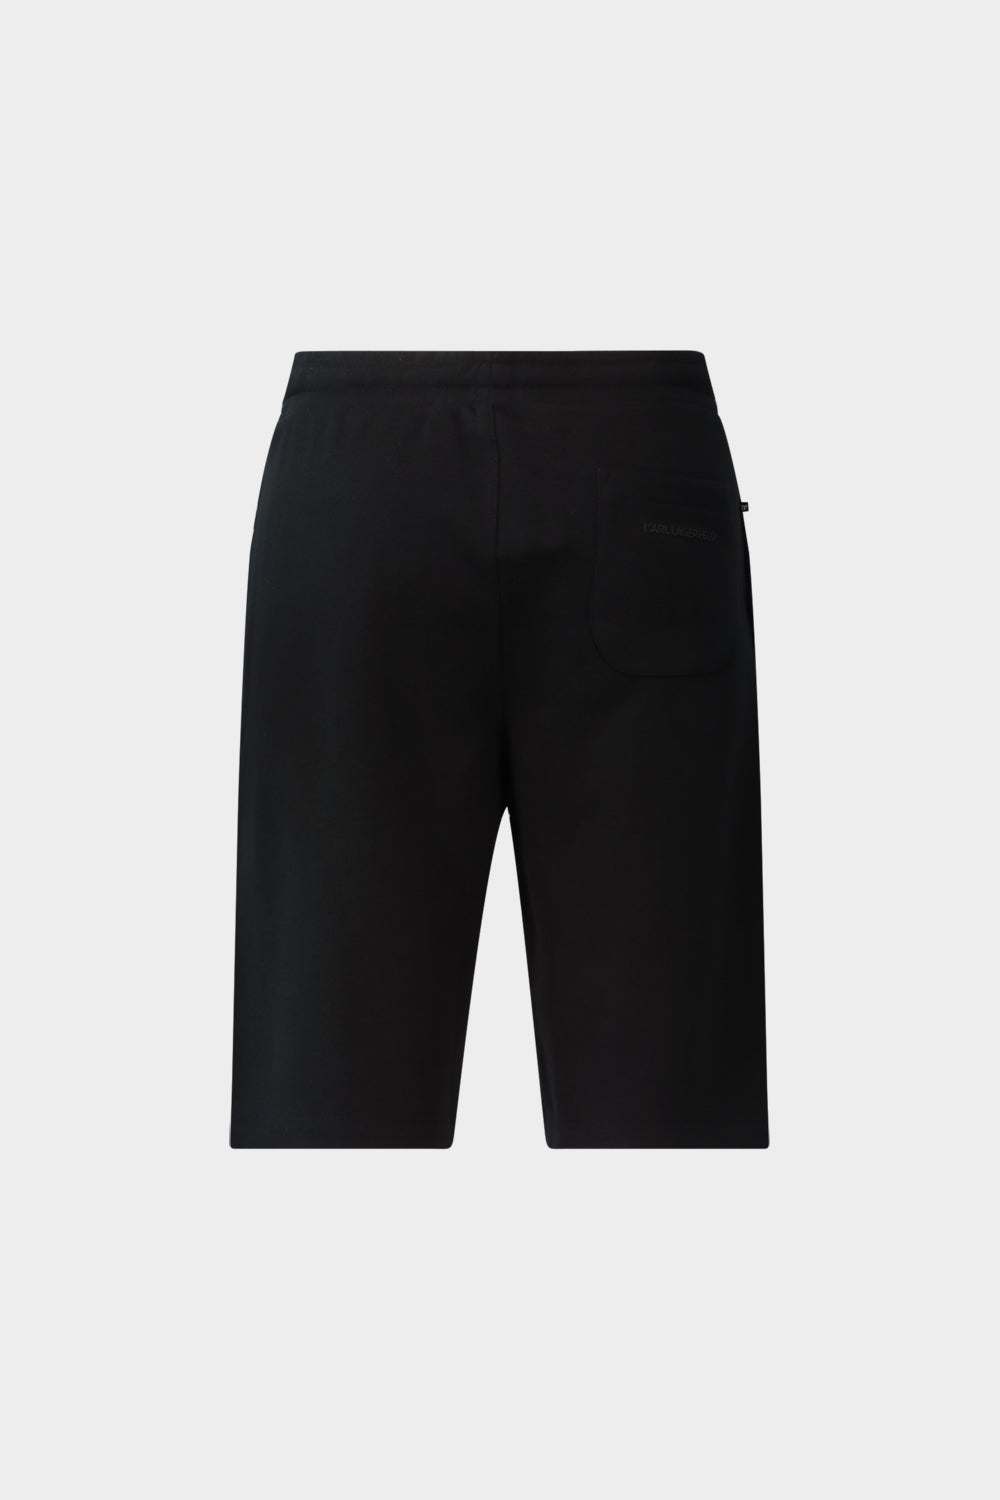 מכנסי טרנינג קצרים לגברים לוגו KARL LAGERFELD KARL LAGERFELD Vendome online | ונדום .